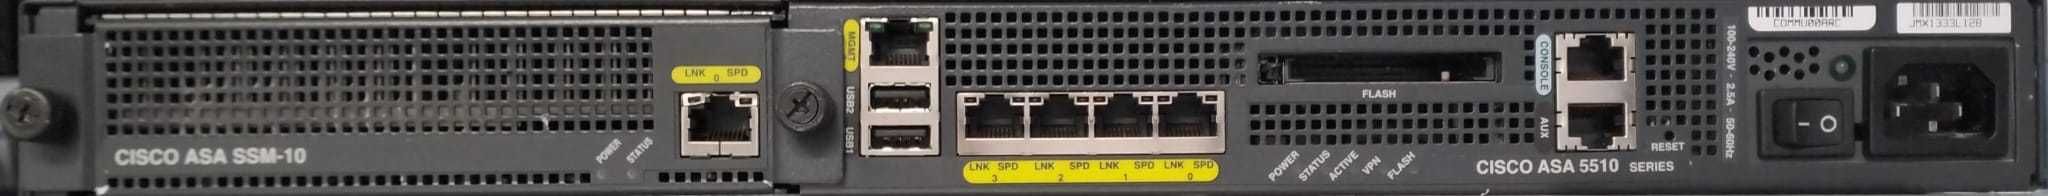 Cisco Firewall ASA 5510